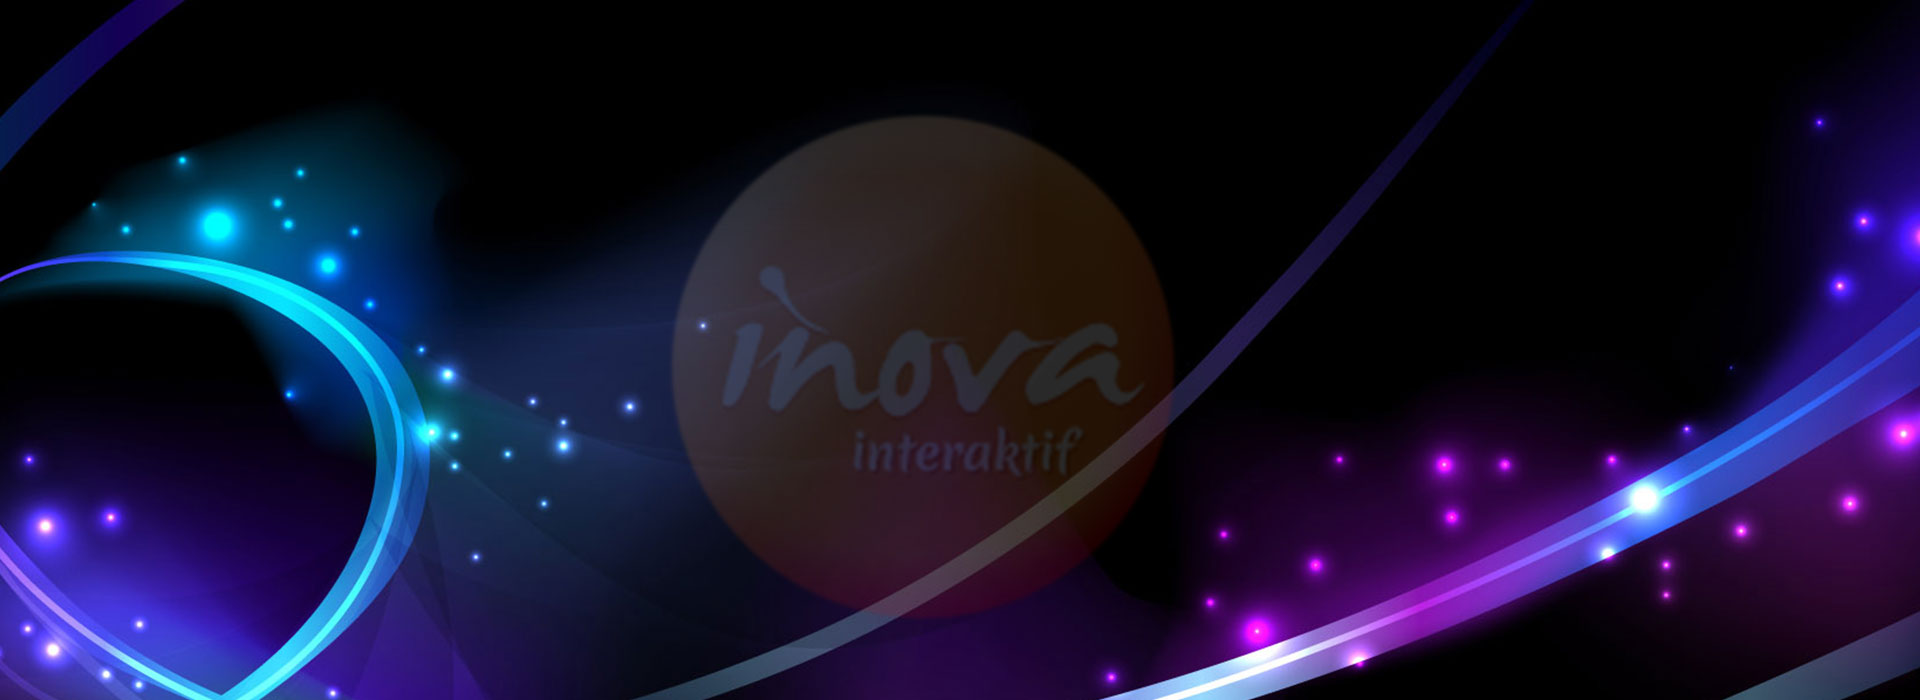 inova interaktif